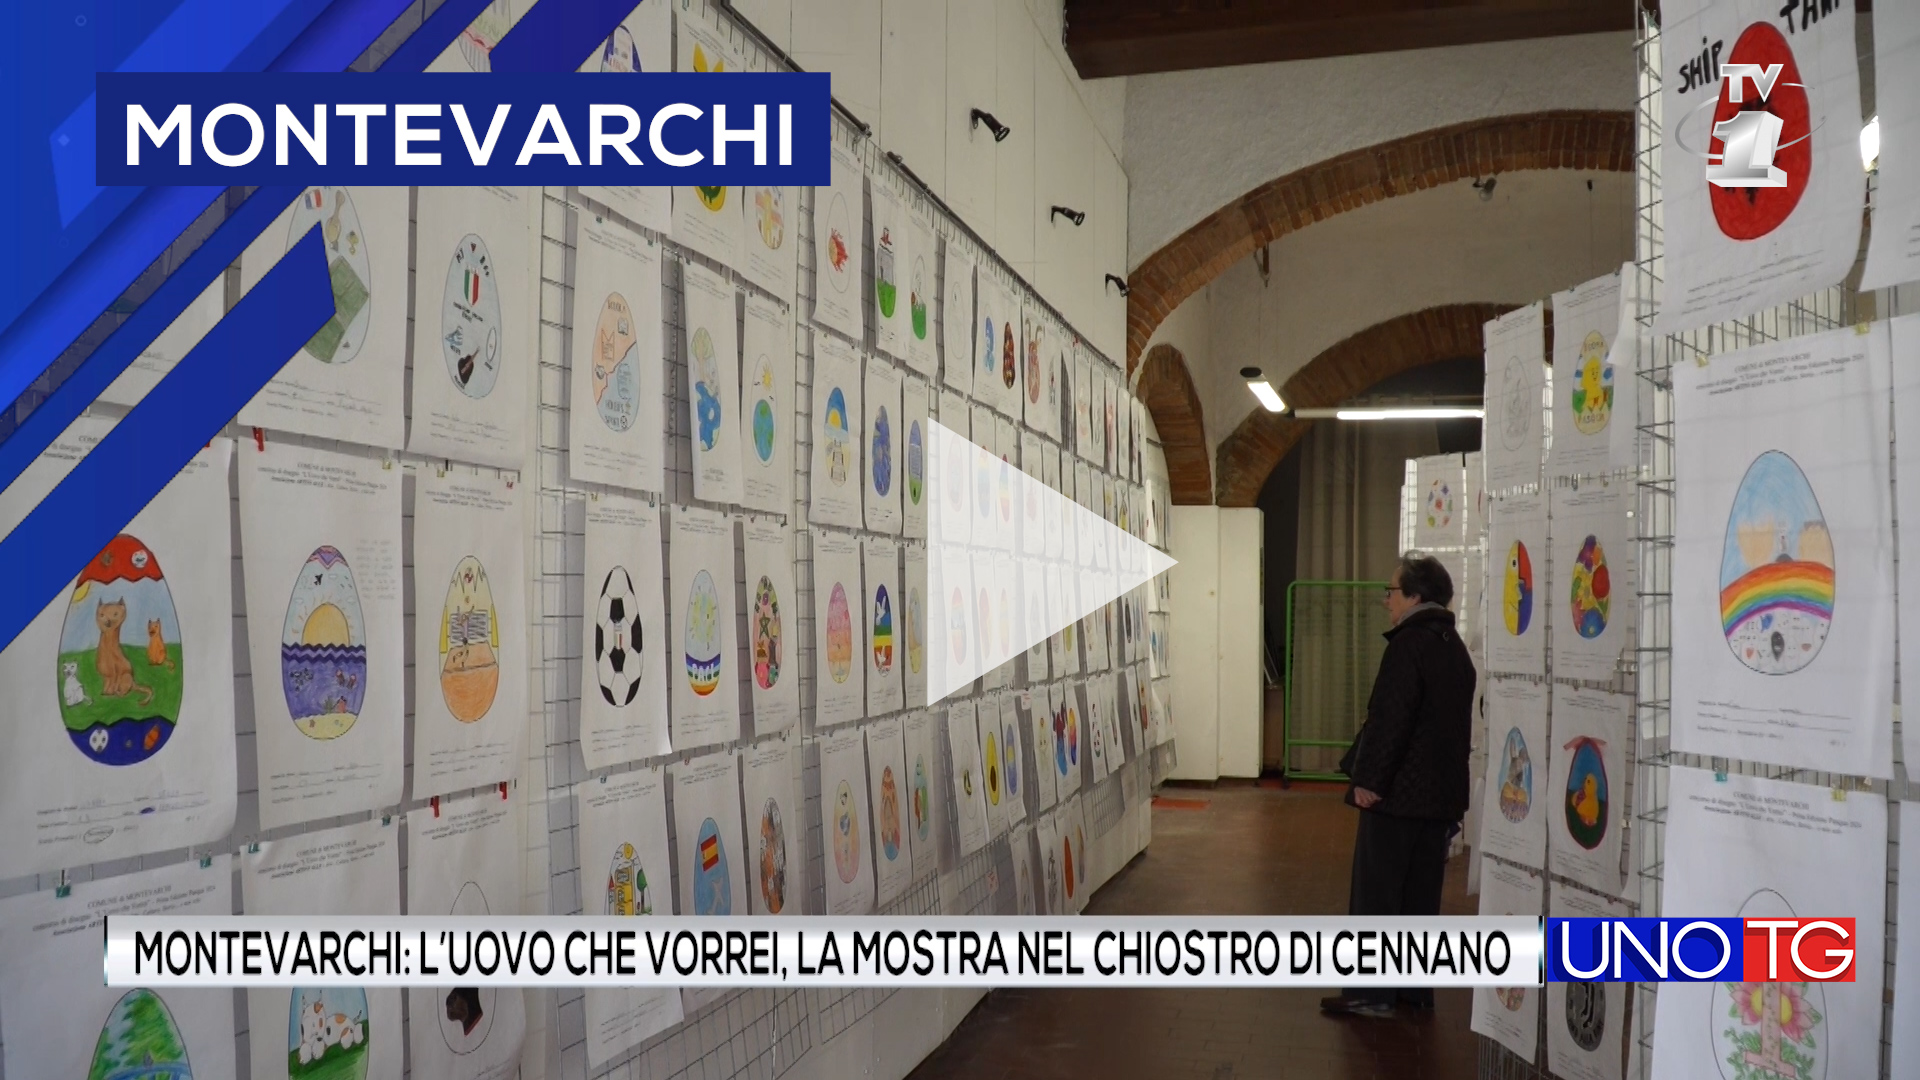 Montevarchi: "L'uovo che vorrei" la mostra nel Chiostro di Cennano